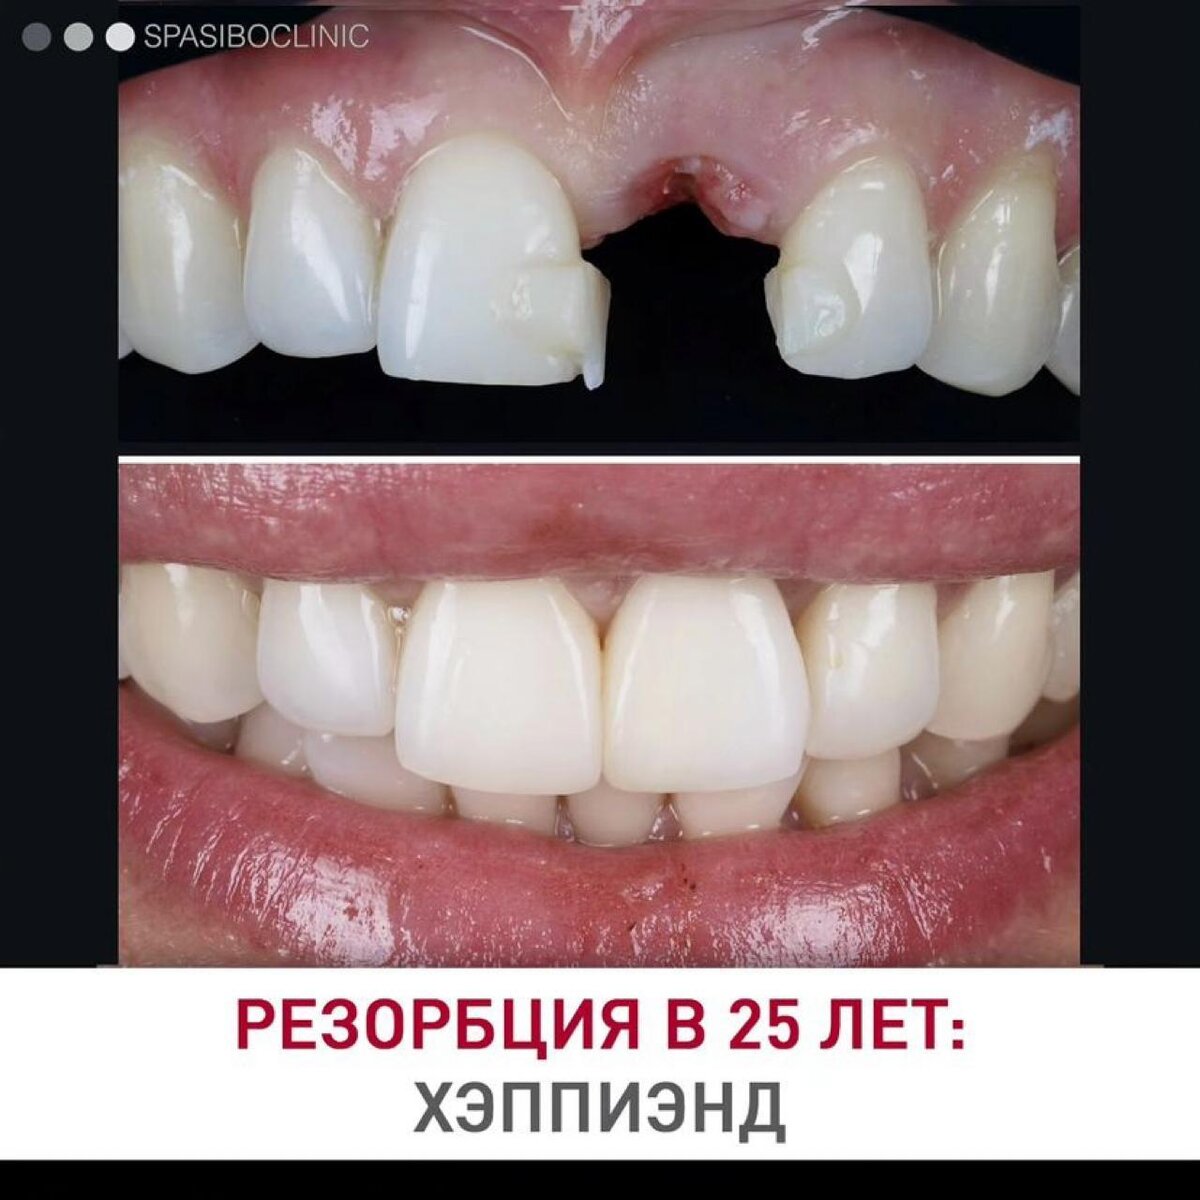 Резорбция шейки переднего зуба у 25-летней девушки: финал лечения.

24 приема в течение 8 месяцев.
Шаг за шагом - чтобы не потерять, а сохранить.